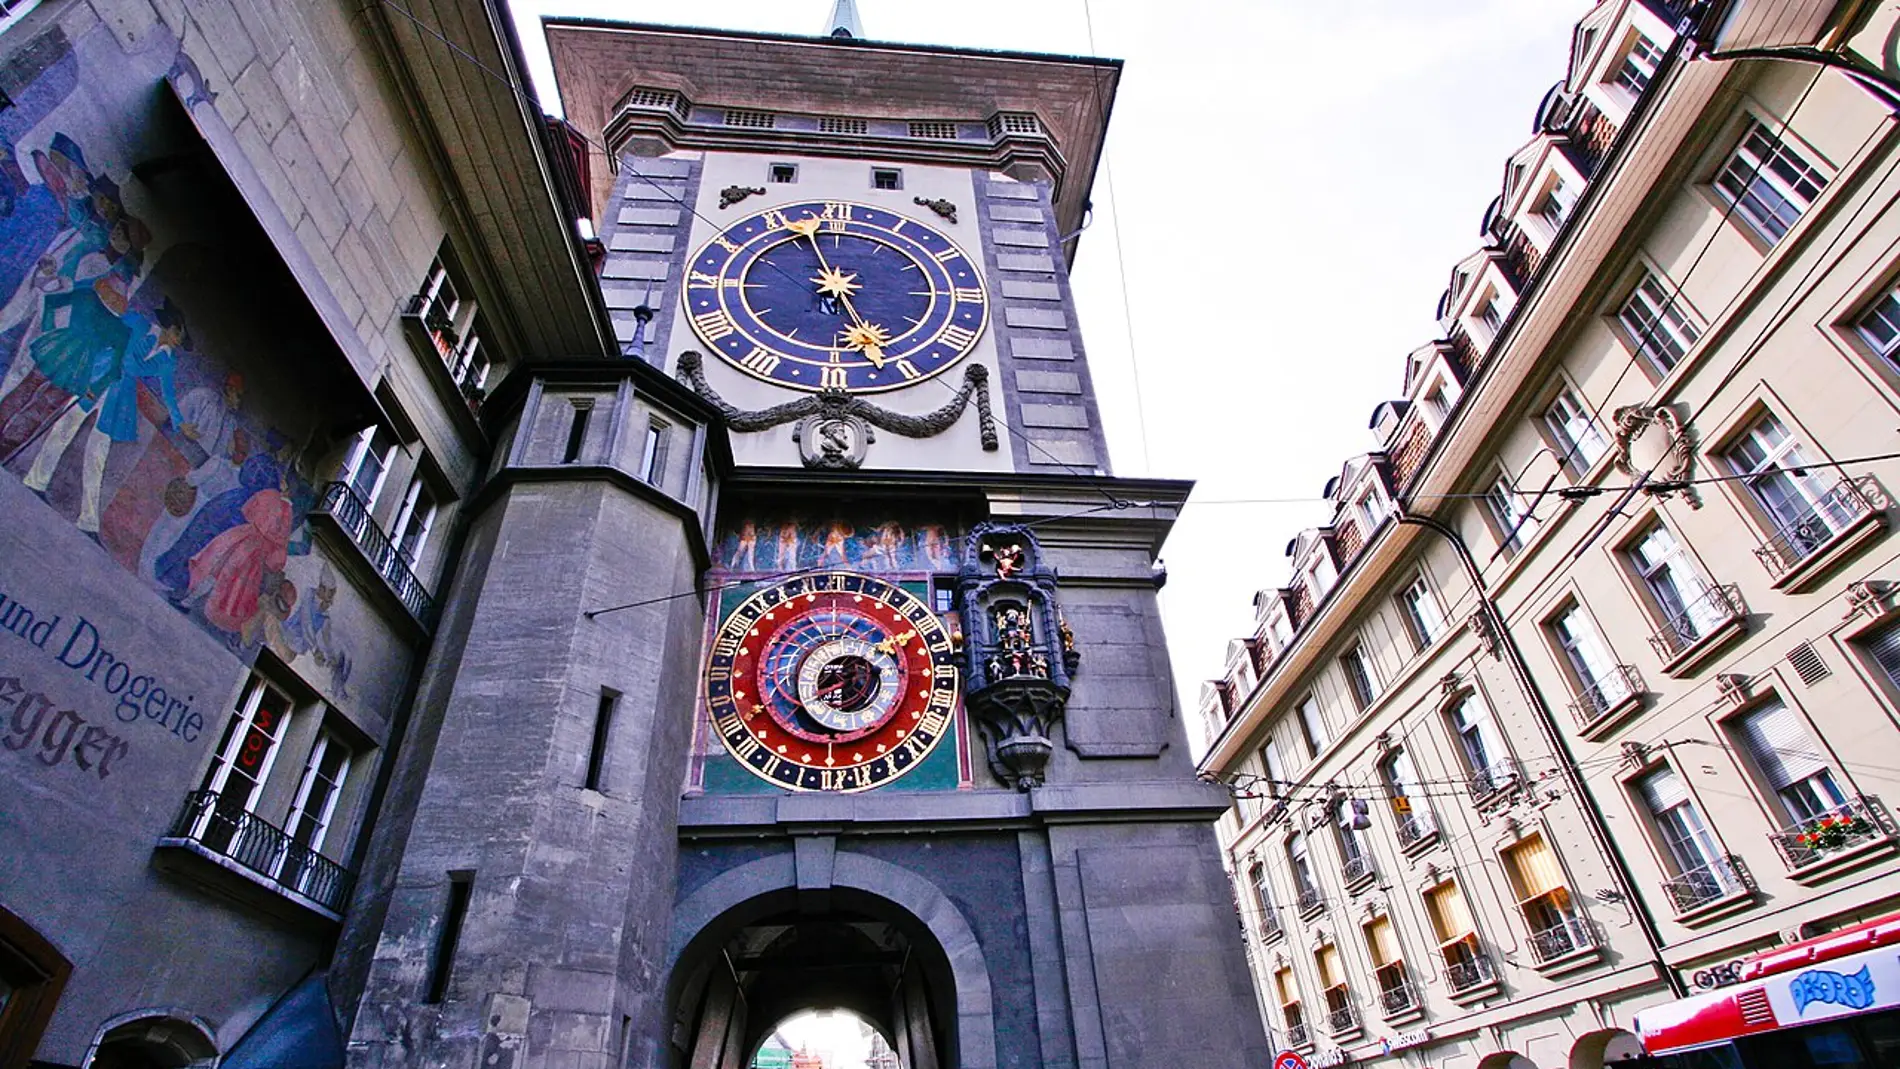 Zytgloggeturm, Torre del Reloj de Berna: ¿Qué significa su curioso nombre y por qué es tan especial?